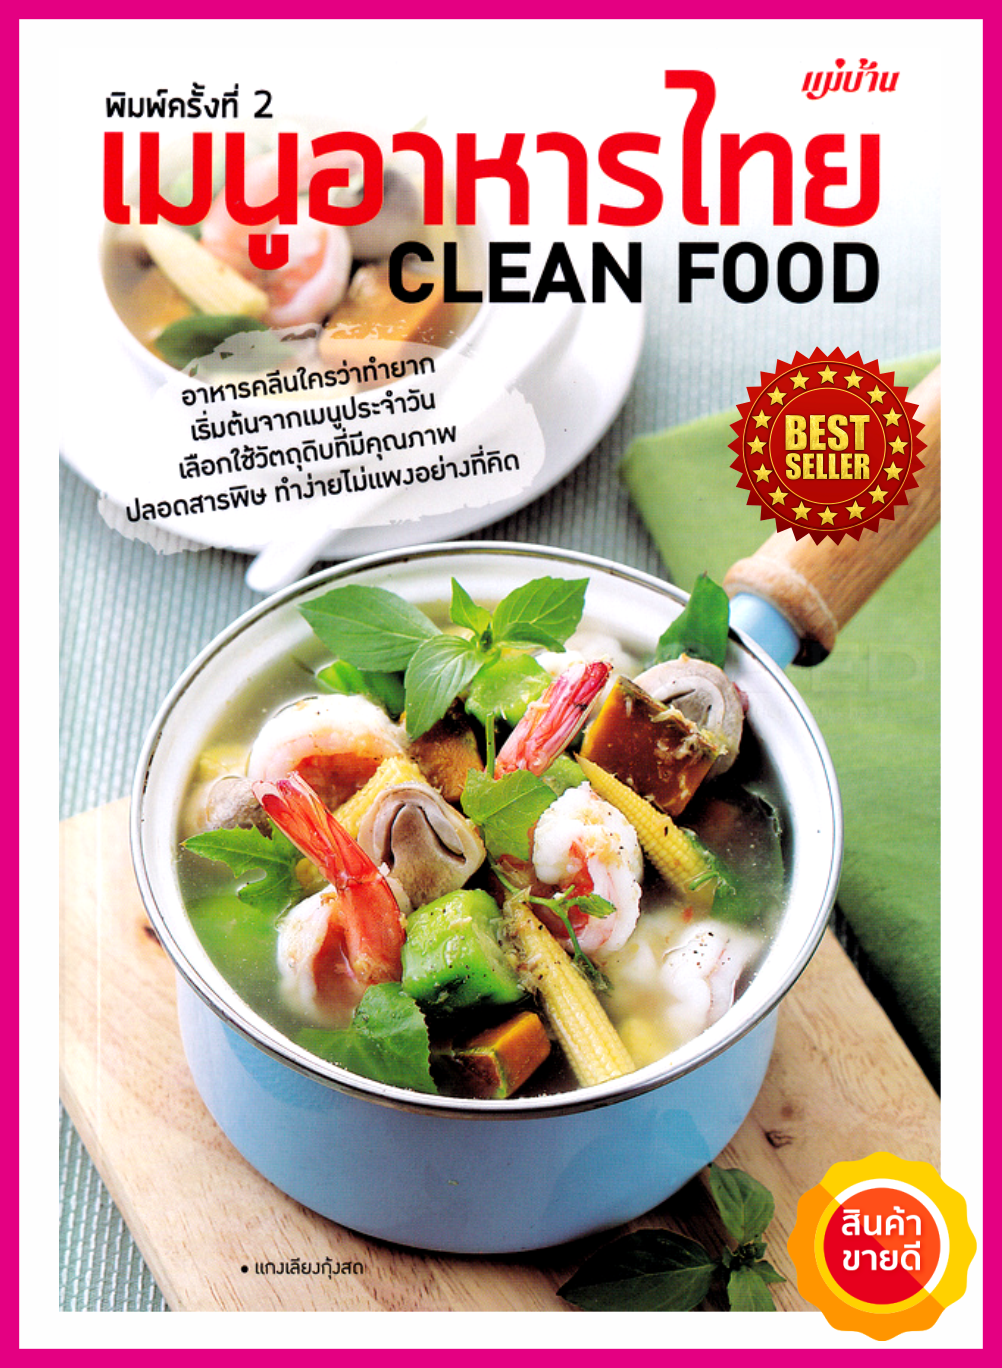 หนังสือ เมนูอาหารไทย Clean Food คู่มือสอนทำอาหารคลีนทำง่ายๆไม่แพงด้วยเคล็ดพิเศษ เลือกสรรวัตถุดิบ รวมเมนูคลีนเพื่อสุขภาพไว้มากกว่า 50สูตร